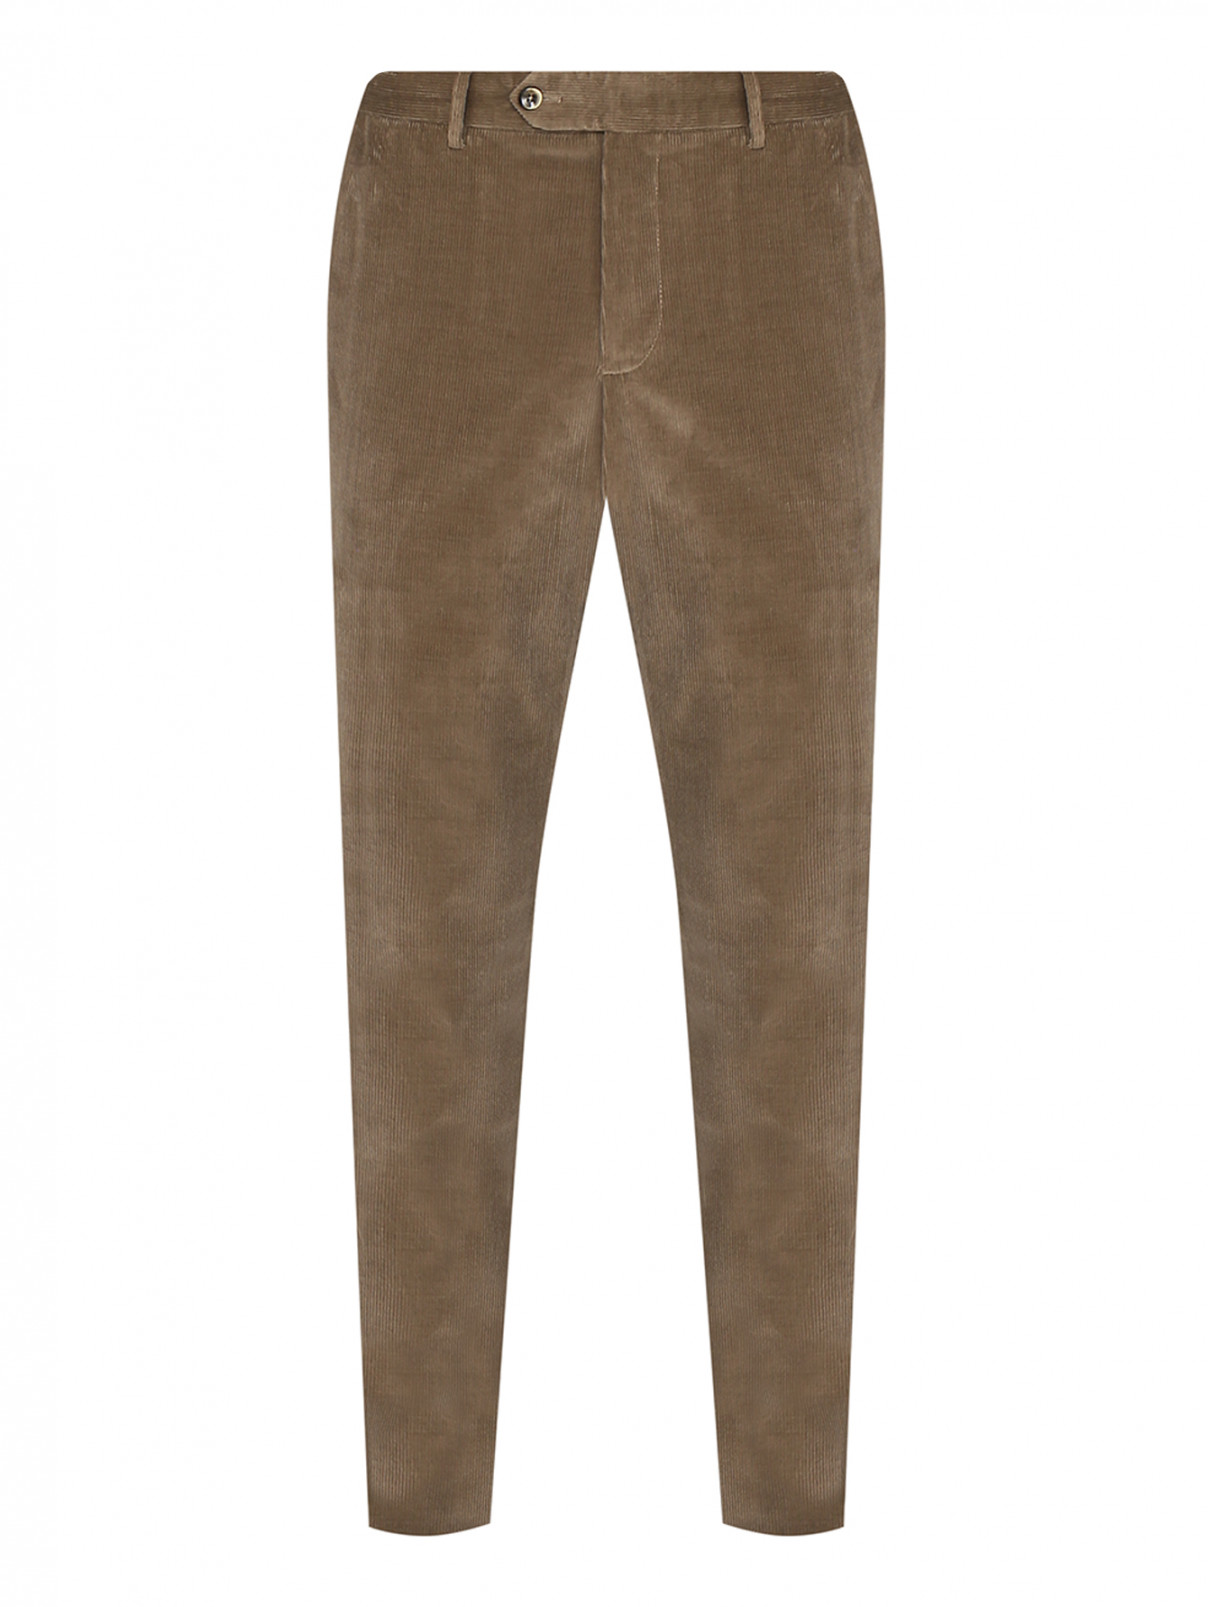 Вельветовые брюки с карманами PT Torino  –  Общий вид  – Цвет:  Зеленый